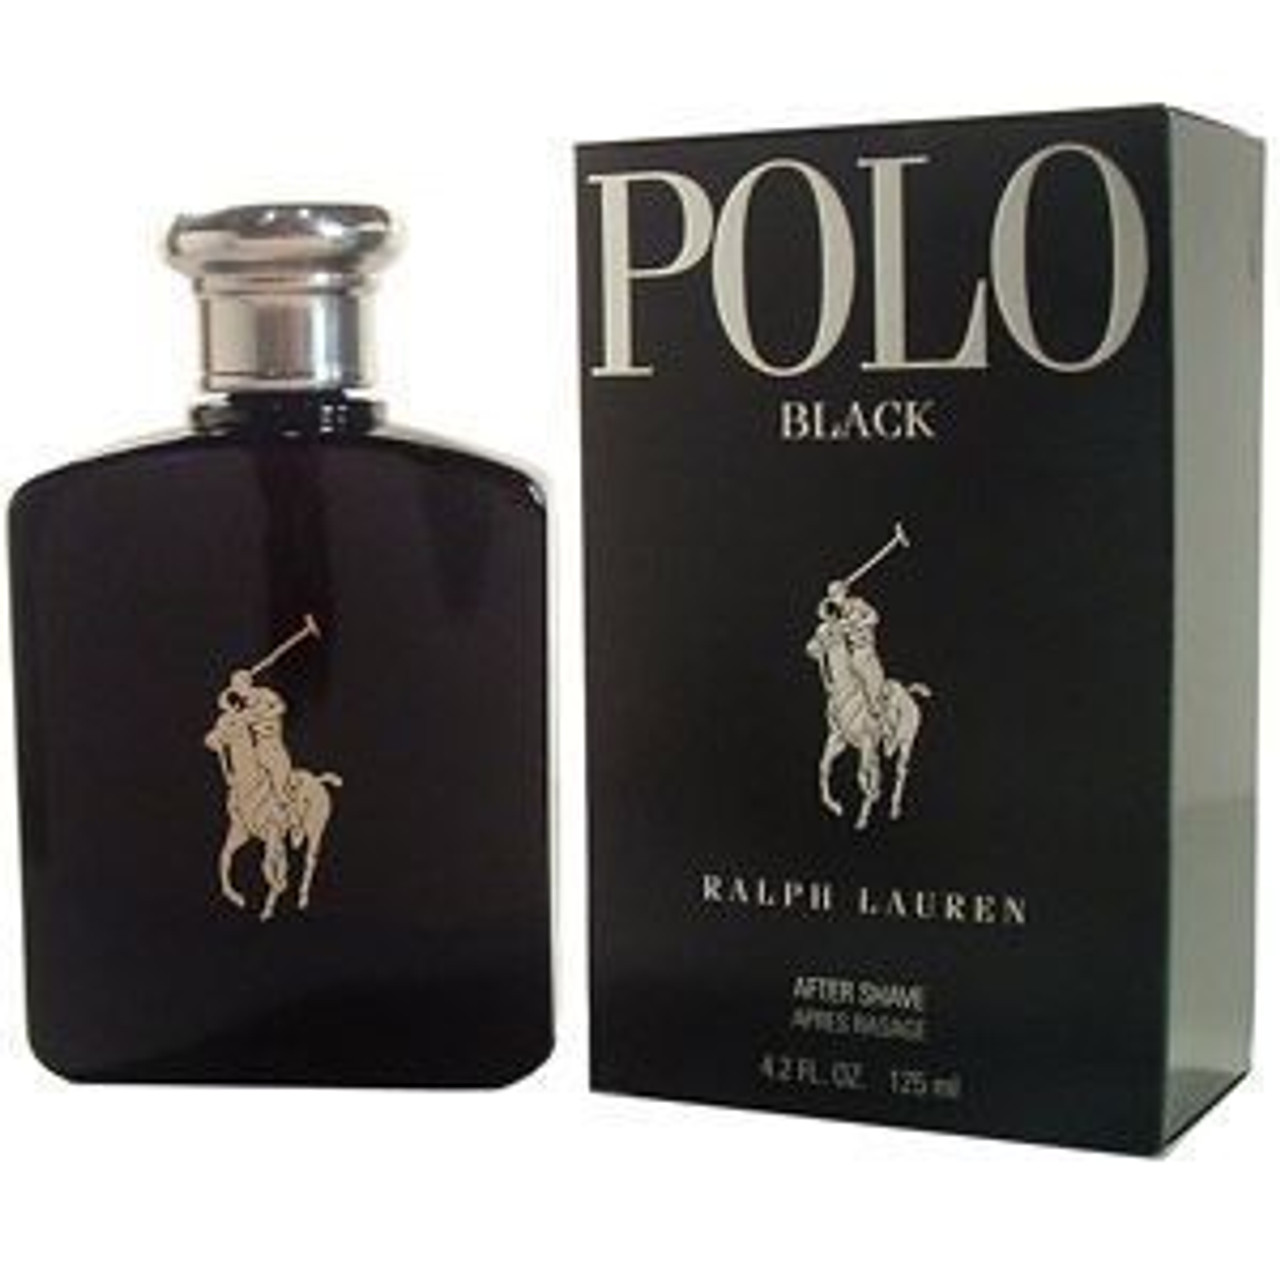 Polo Black by Ralph Lauren 6.7oz Eau De 